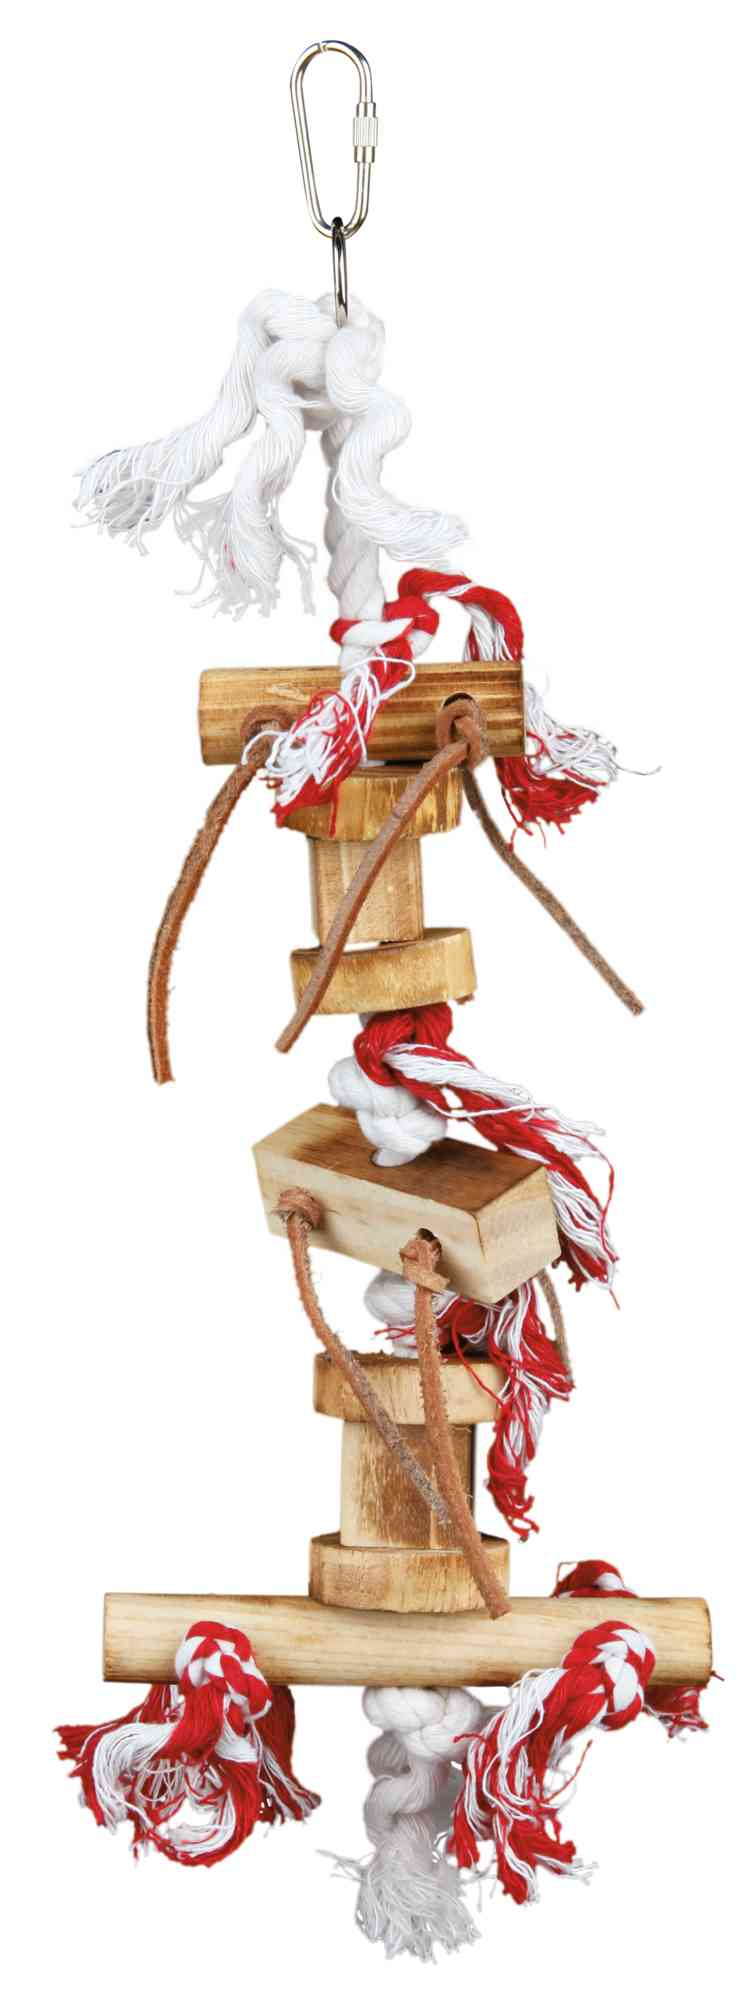 Brinquedo em madeira sobre corda com tiras de couro